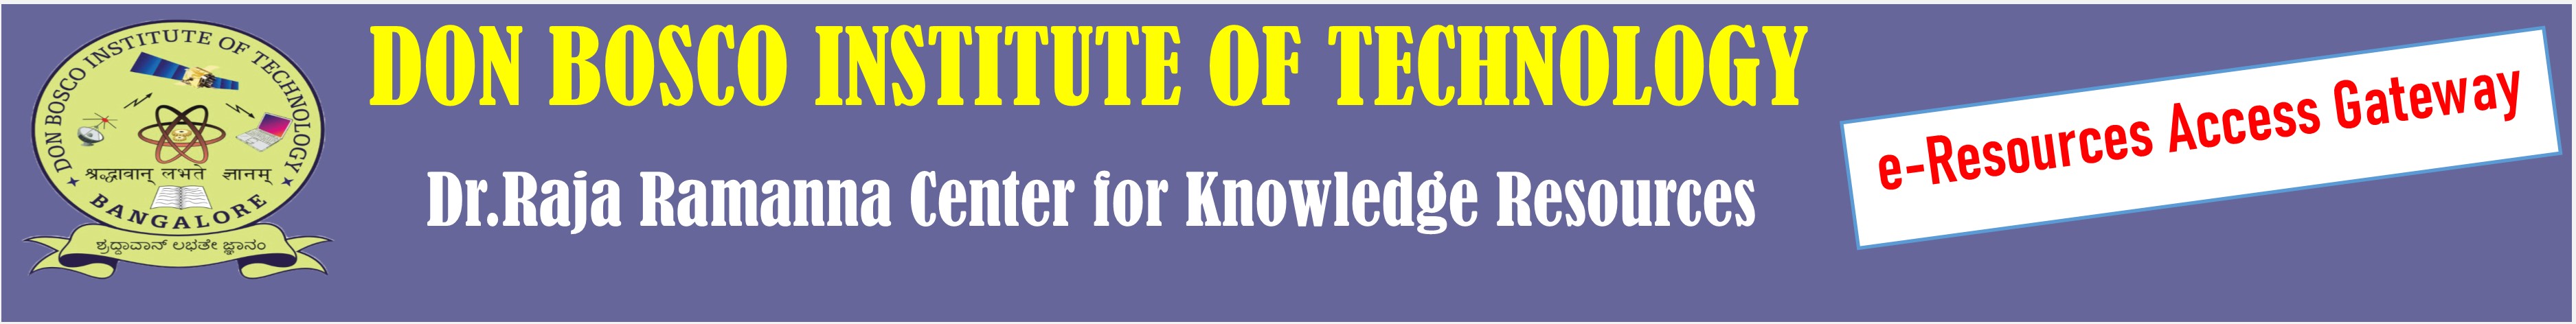 Don Bosco Institute Of Technology, Bangalore Logo